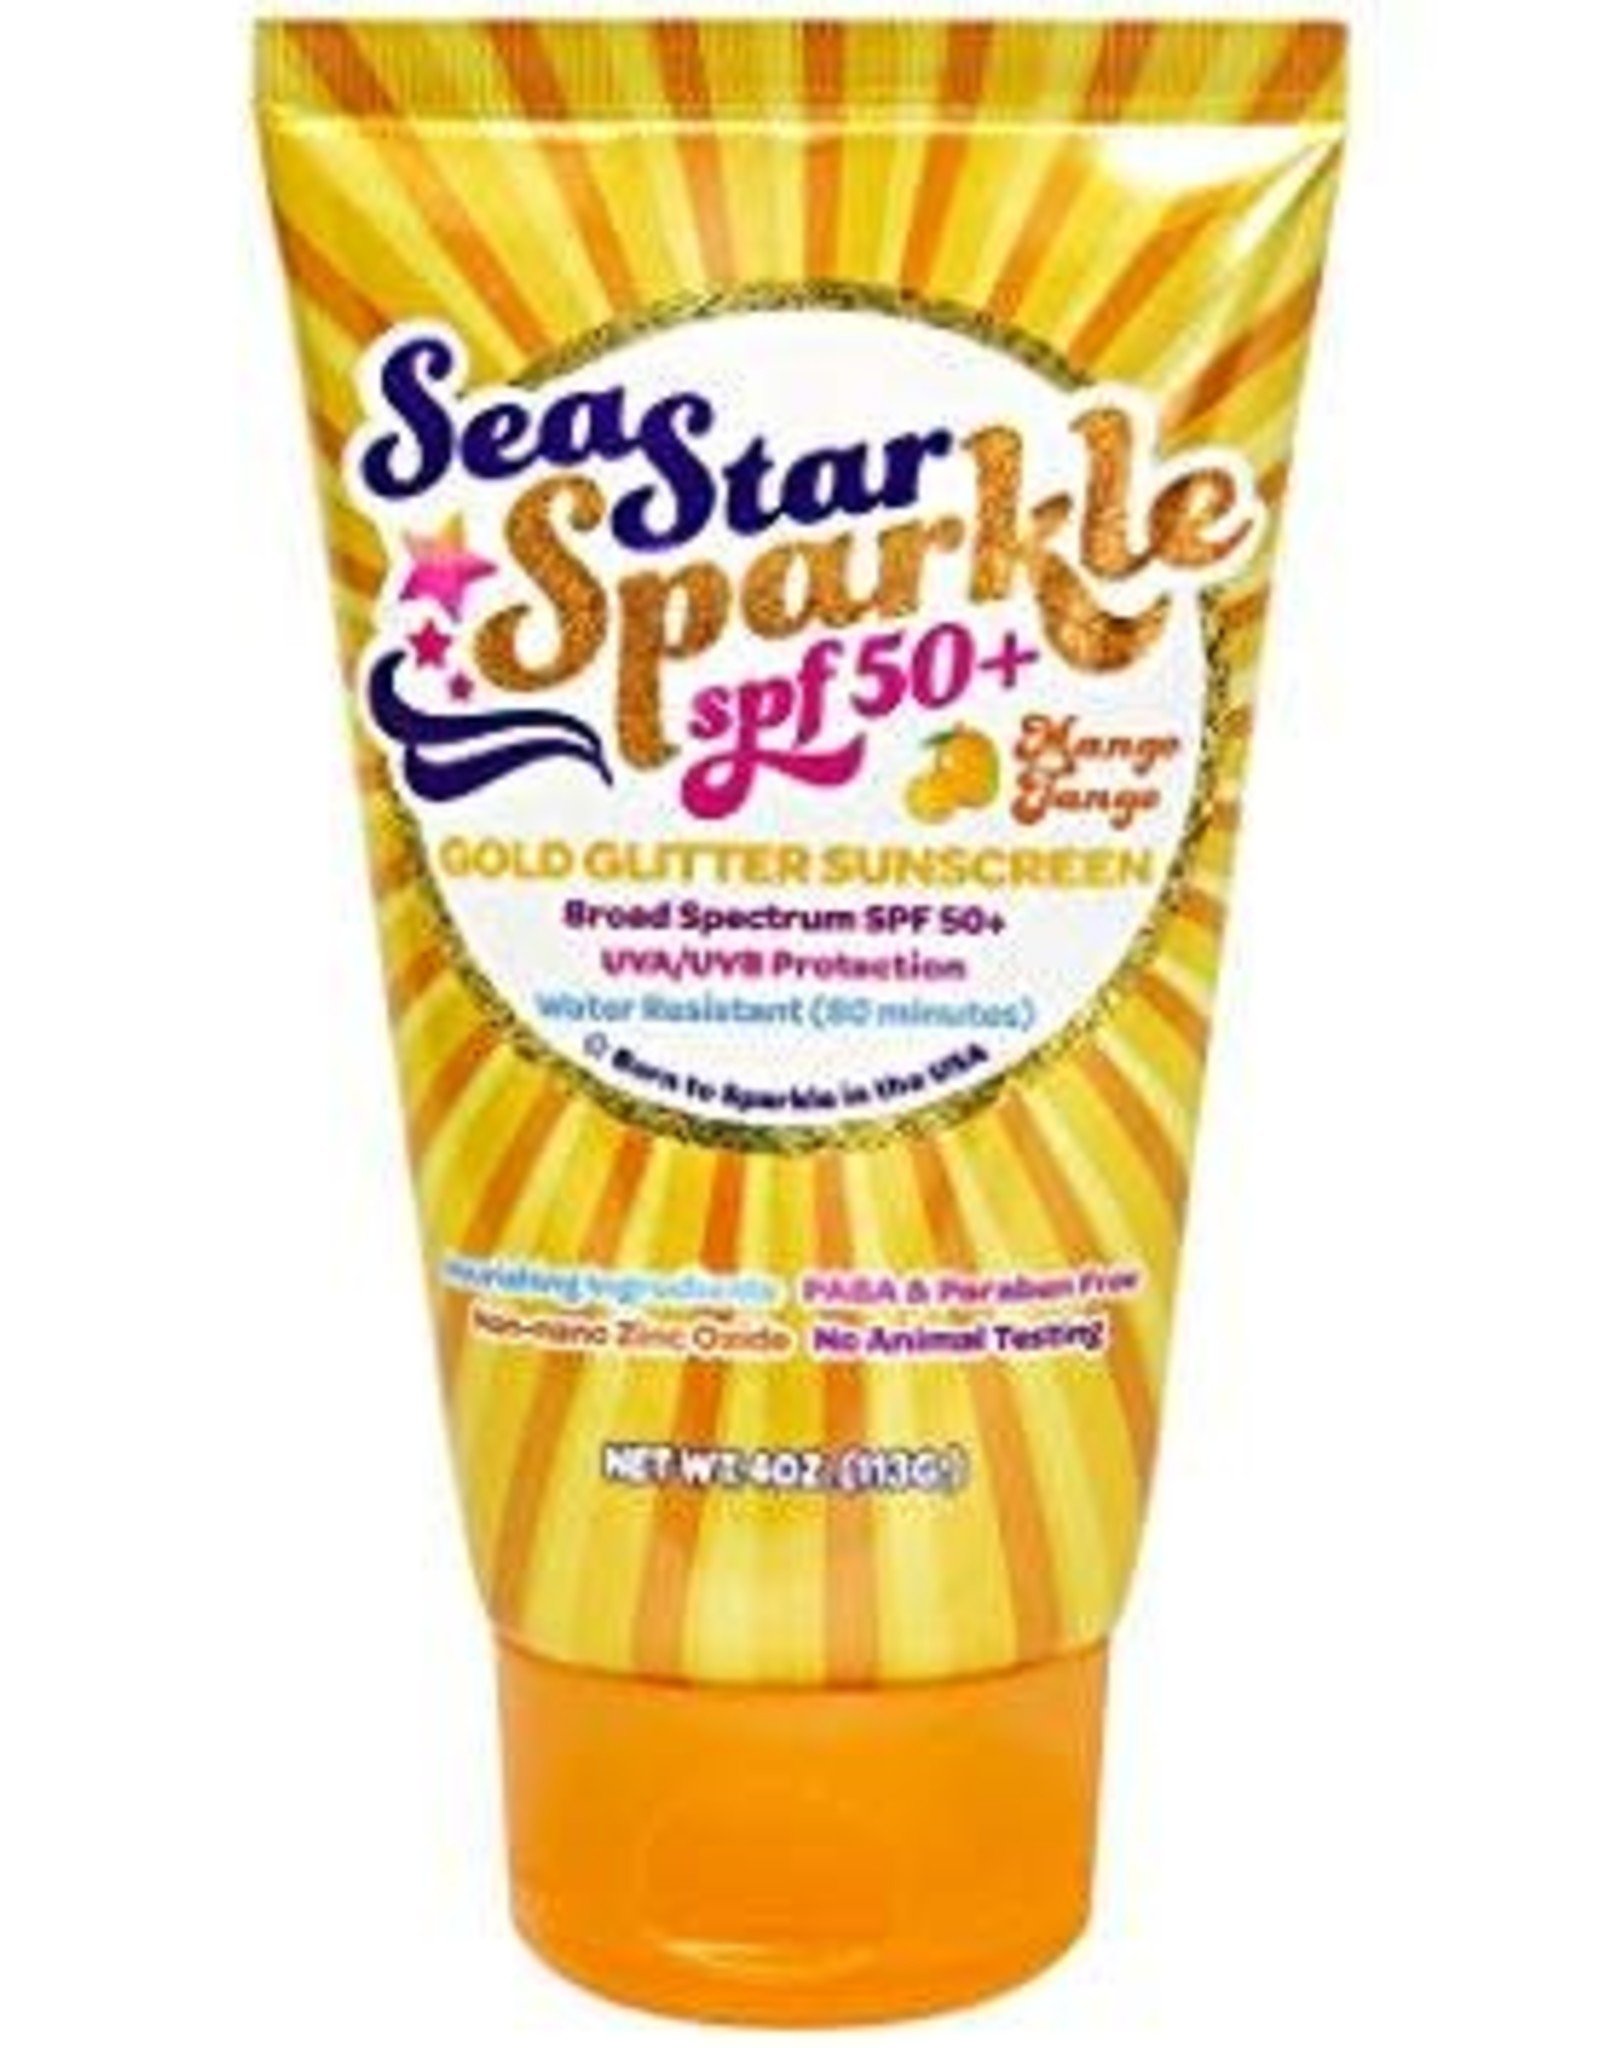 SeaStar Mango Tango Glitter Sunscreen